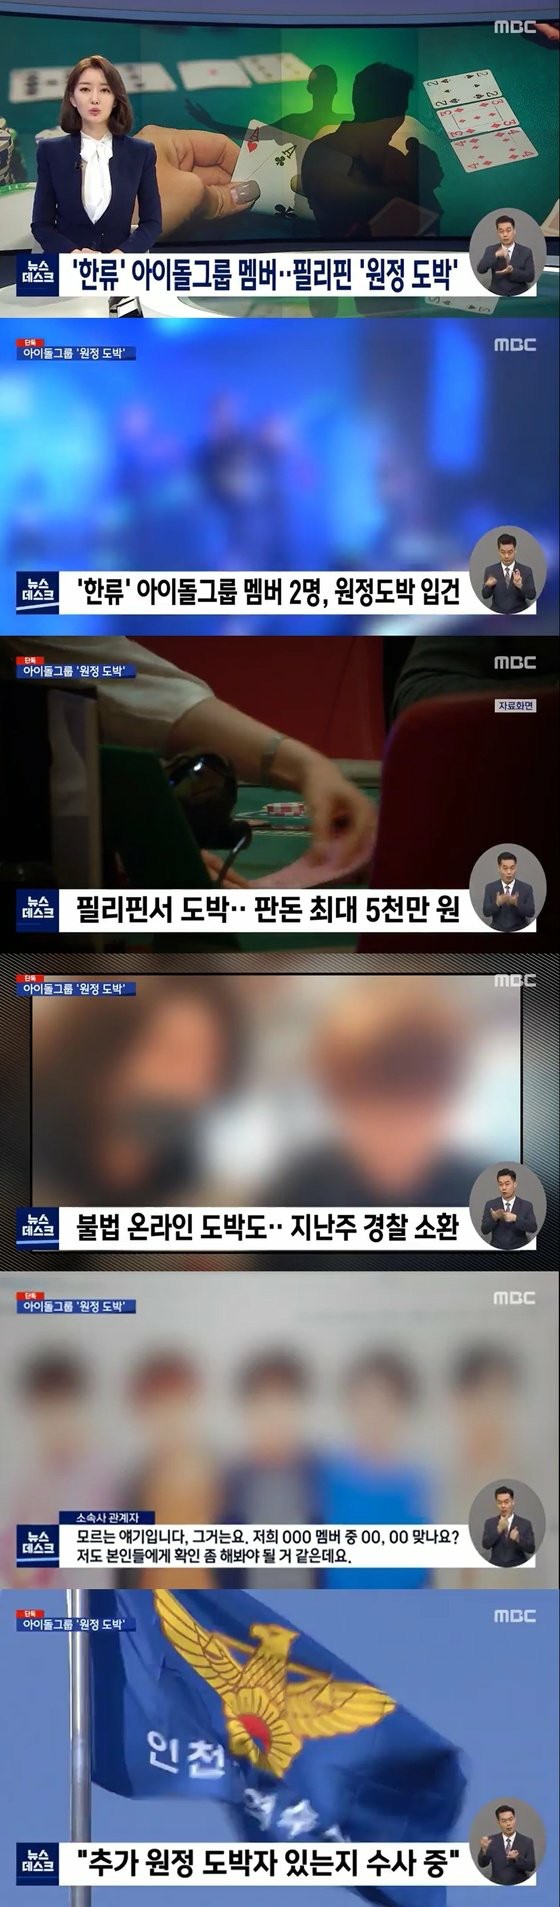 三十多岁的两名著名偶像成员因涉嫌海外探险赌博和MBC而举报... 5,000万韩元的股份